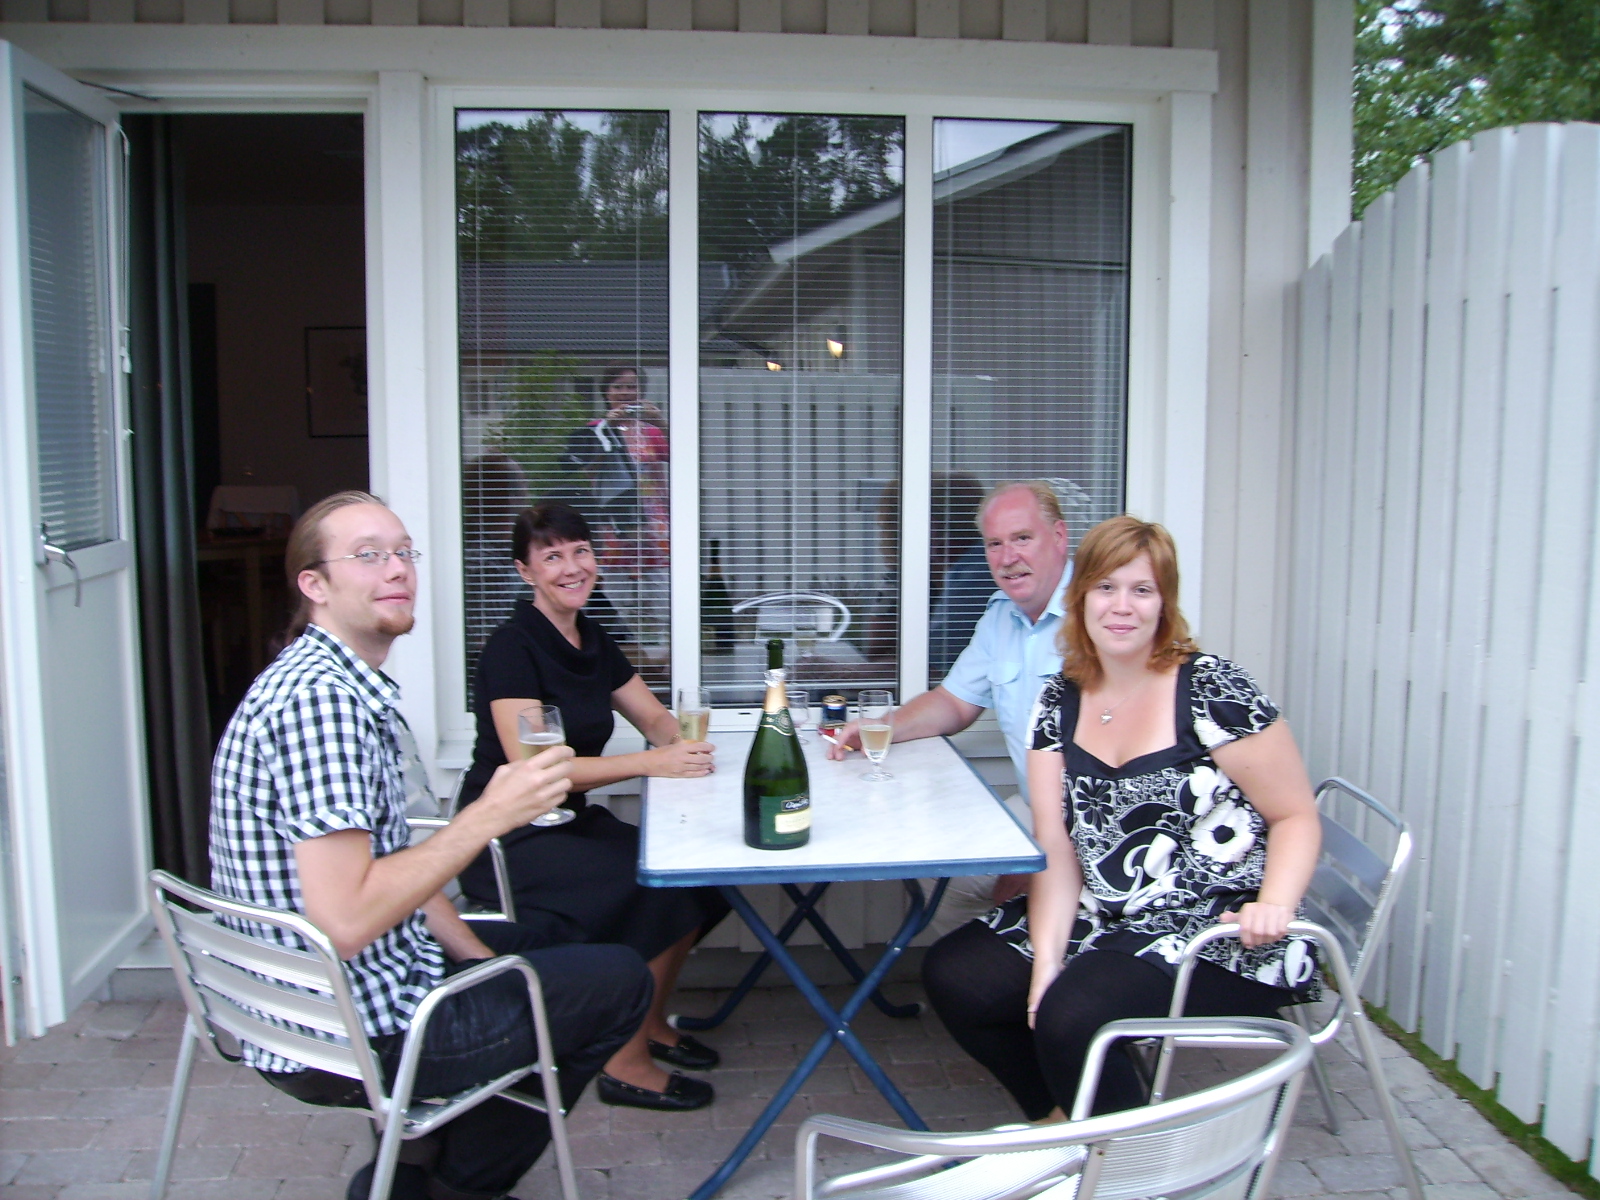 Denna familjen bodde i ett grannhus. Det visade sig att de vunnit en vecka på hotell Åhus Strand, därav champagneflaskan.